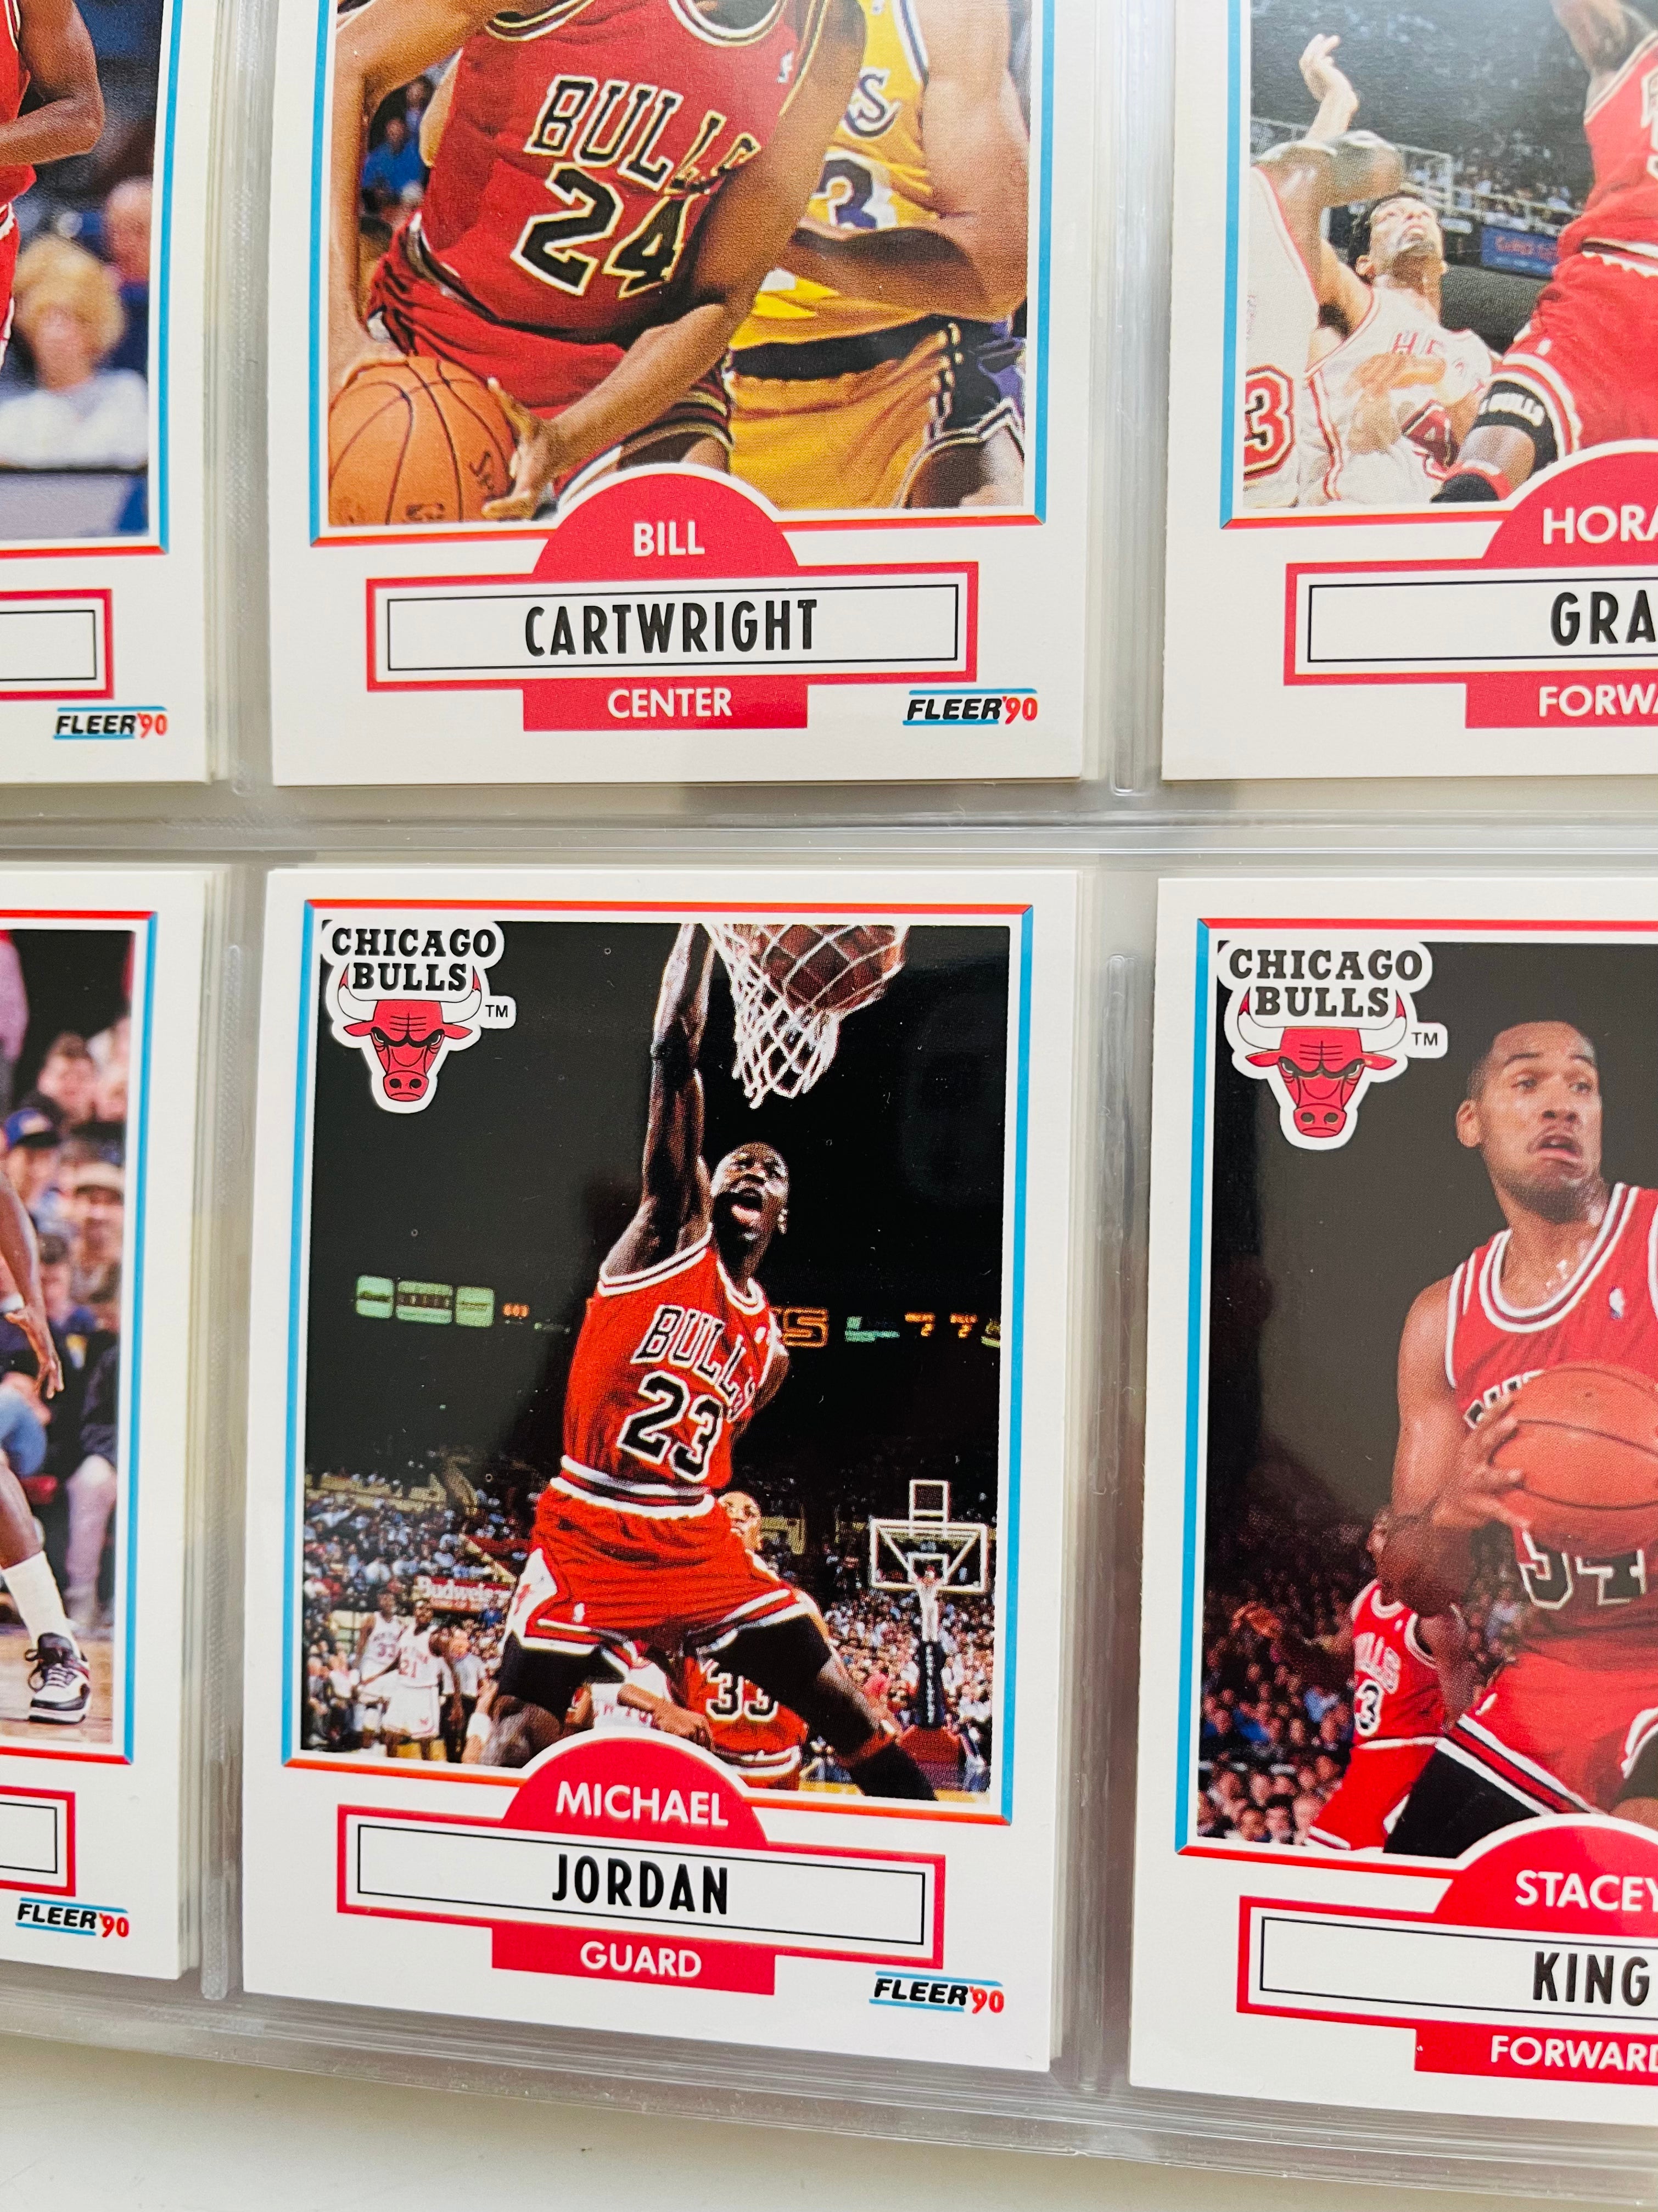 1990 Fleer basketball cards high grade condition set